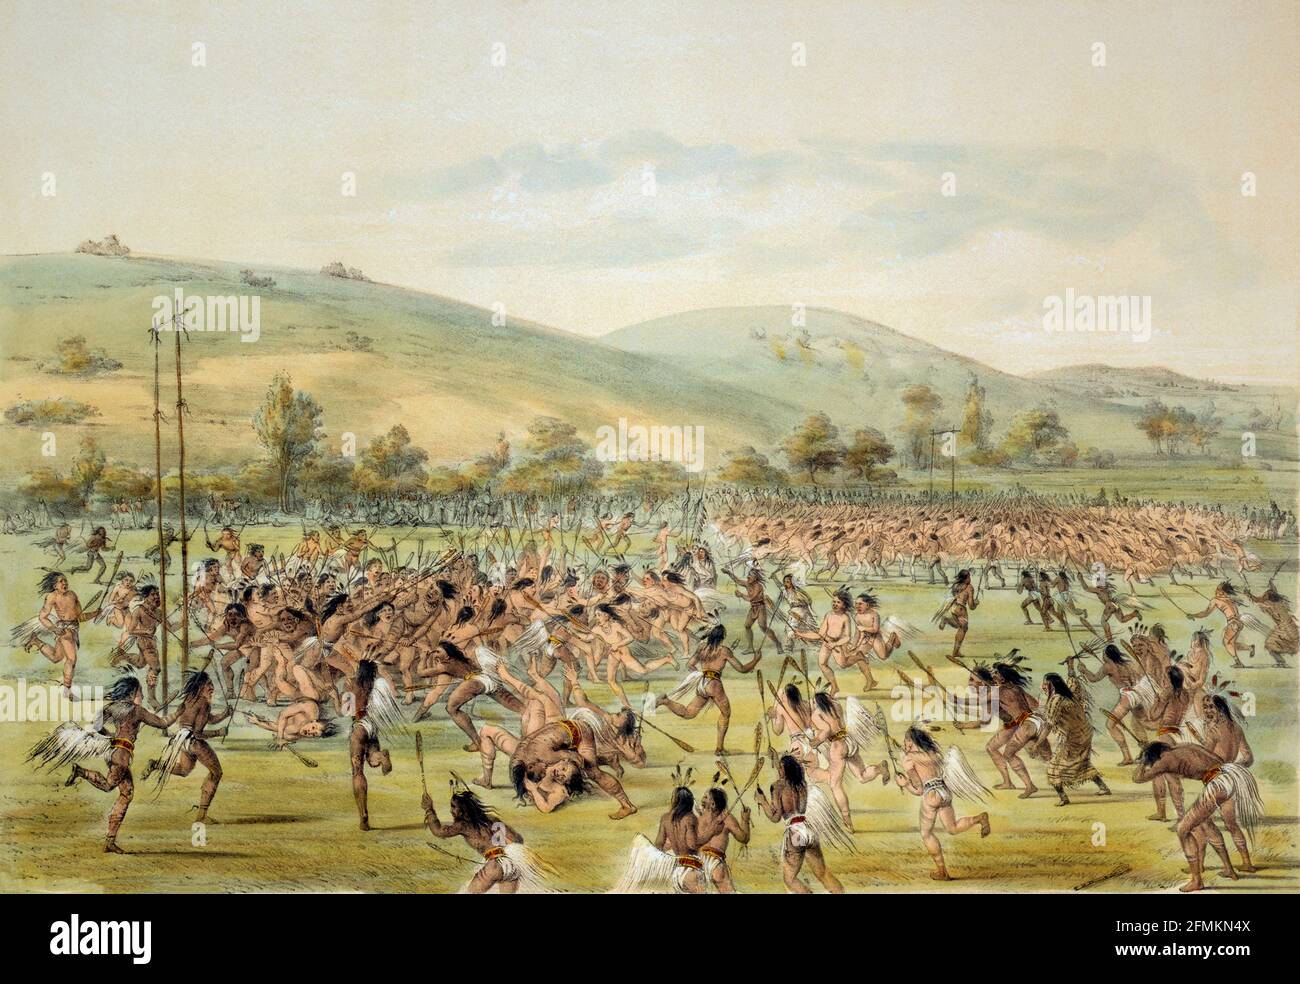 Nativi americani che giocano un gioco di palla simile a lacrosse, vicino a Fort Gibson, Oklahoma. Dopo un'opera dell'artista americano George Catlin, 1796 - 1872, specializzato in dipinti di nativi americani. Foto Stock